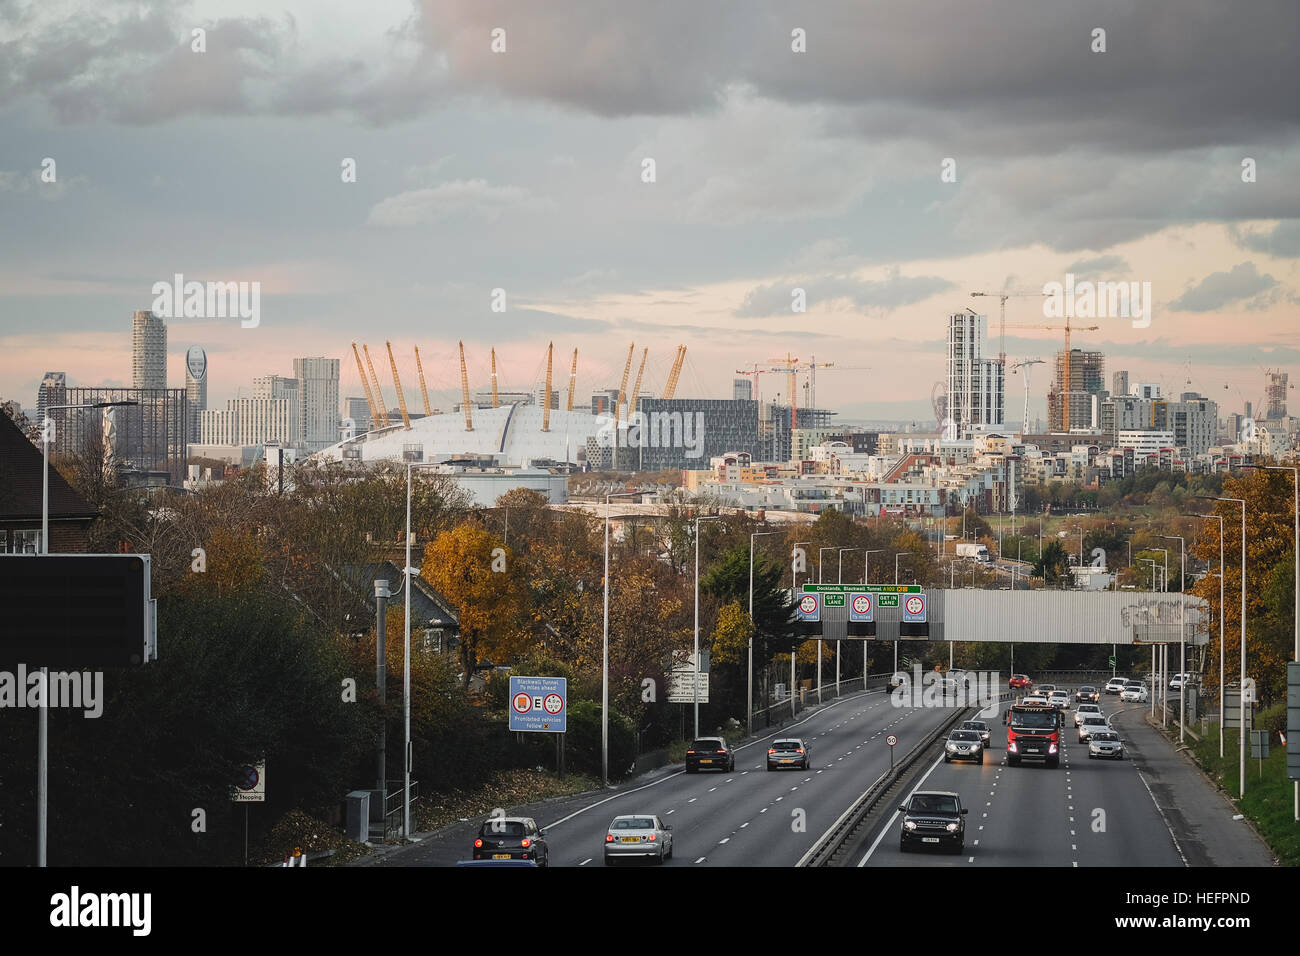 Lo skyline di Londra che mostra l'Arena O2 e Greenwich Millennium Village da Charlton strada su A102 Foto Stock